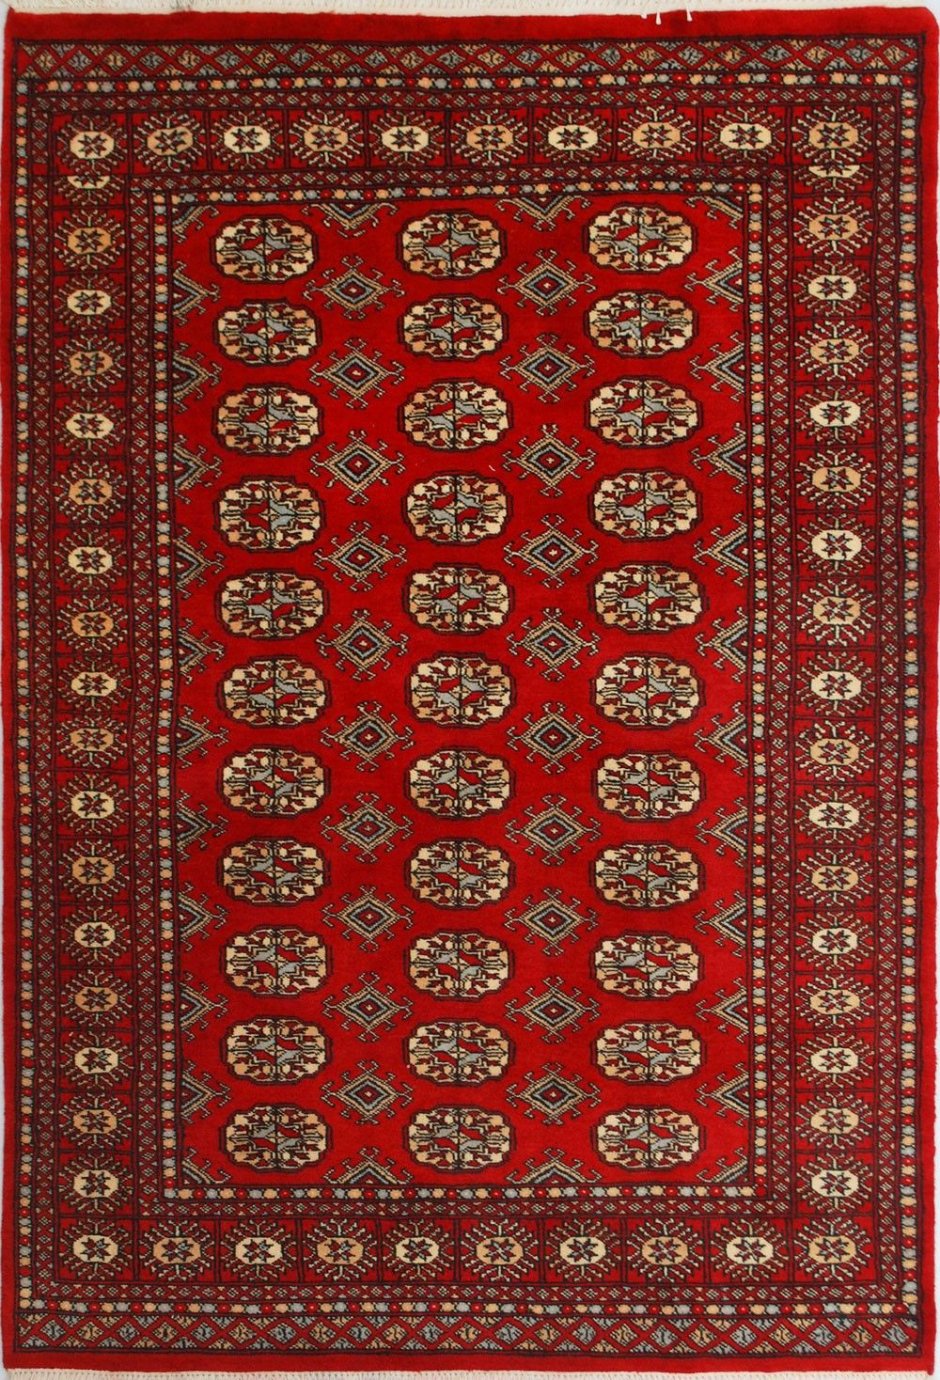 Орнамент туркменского ковра